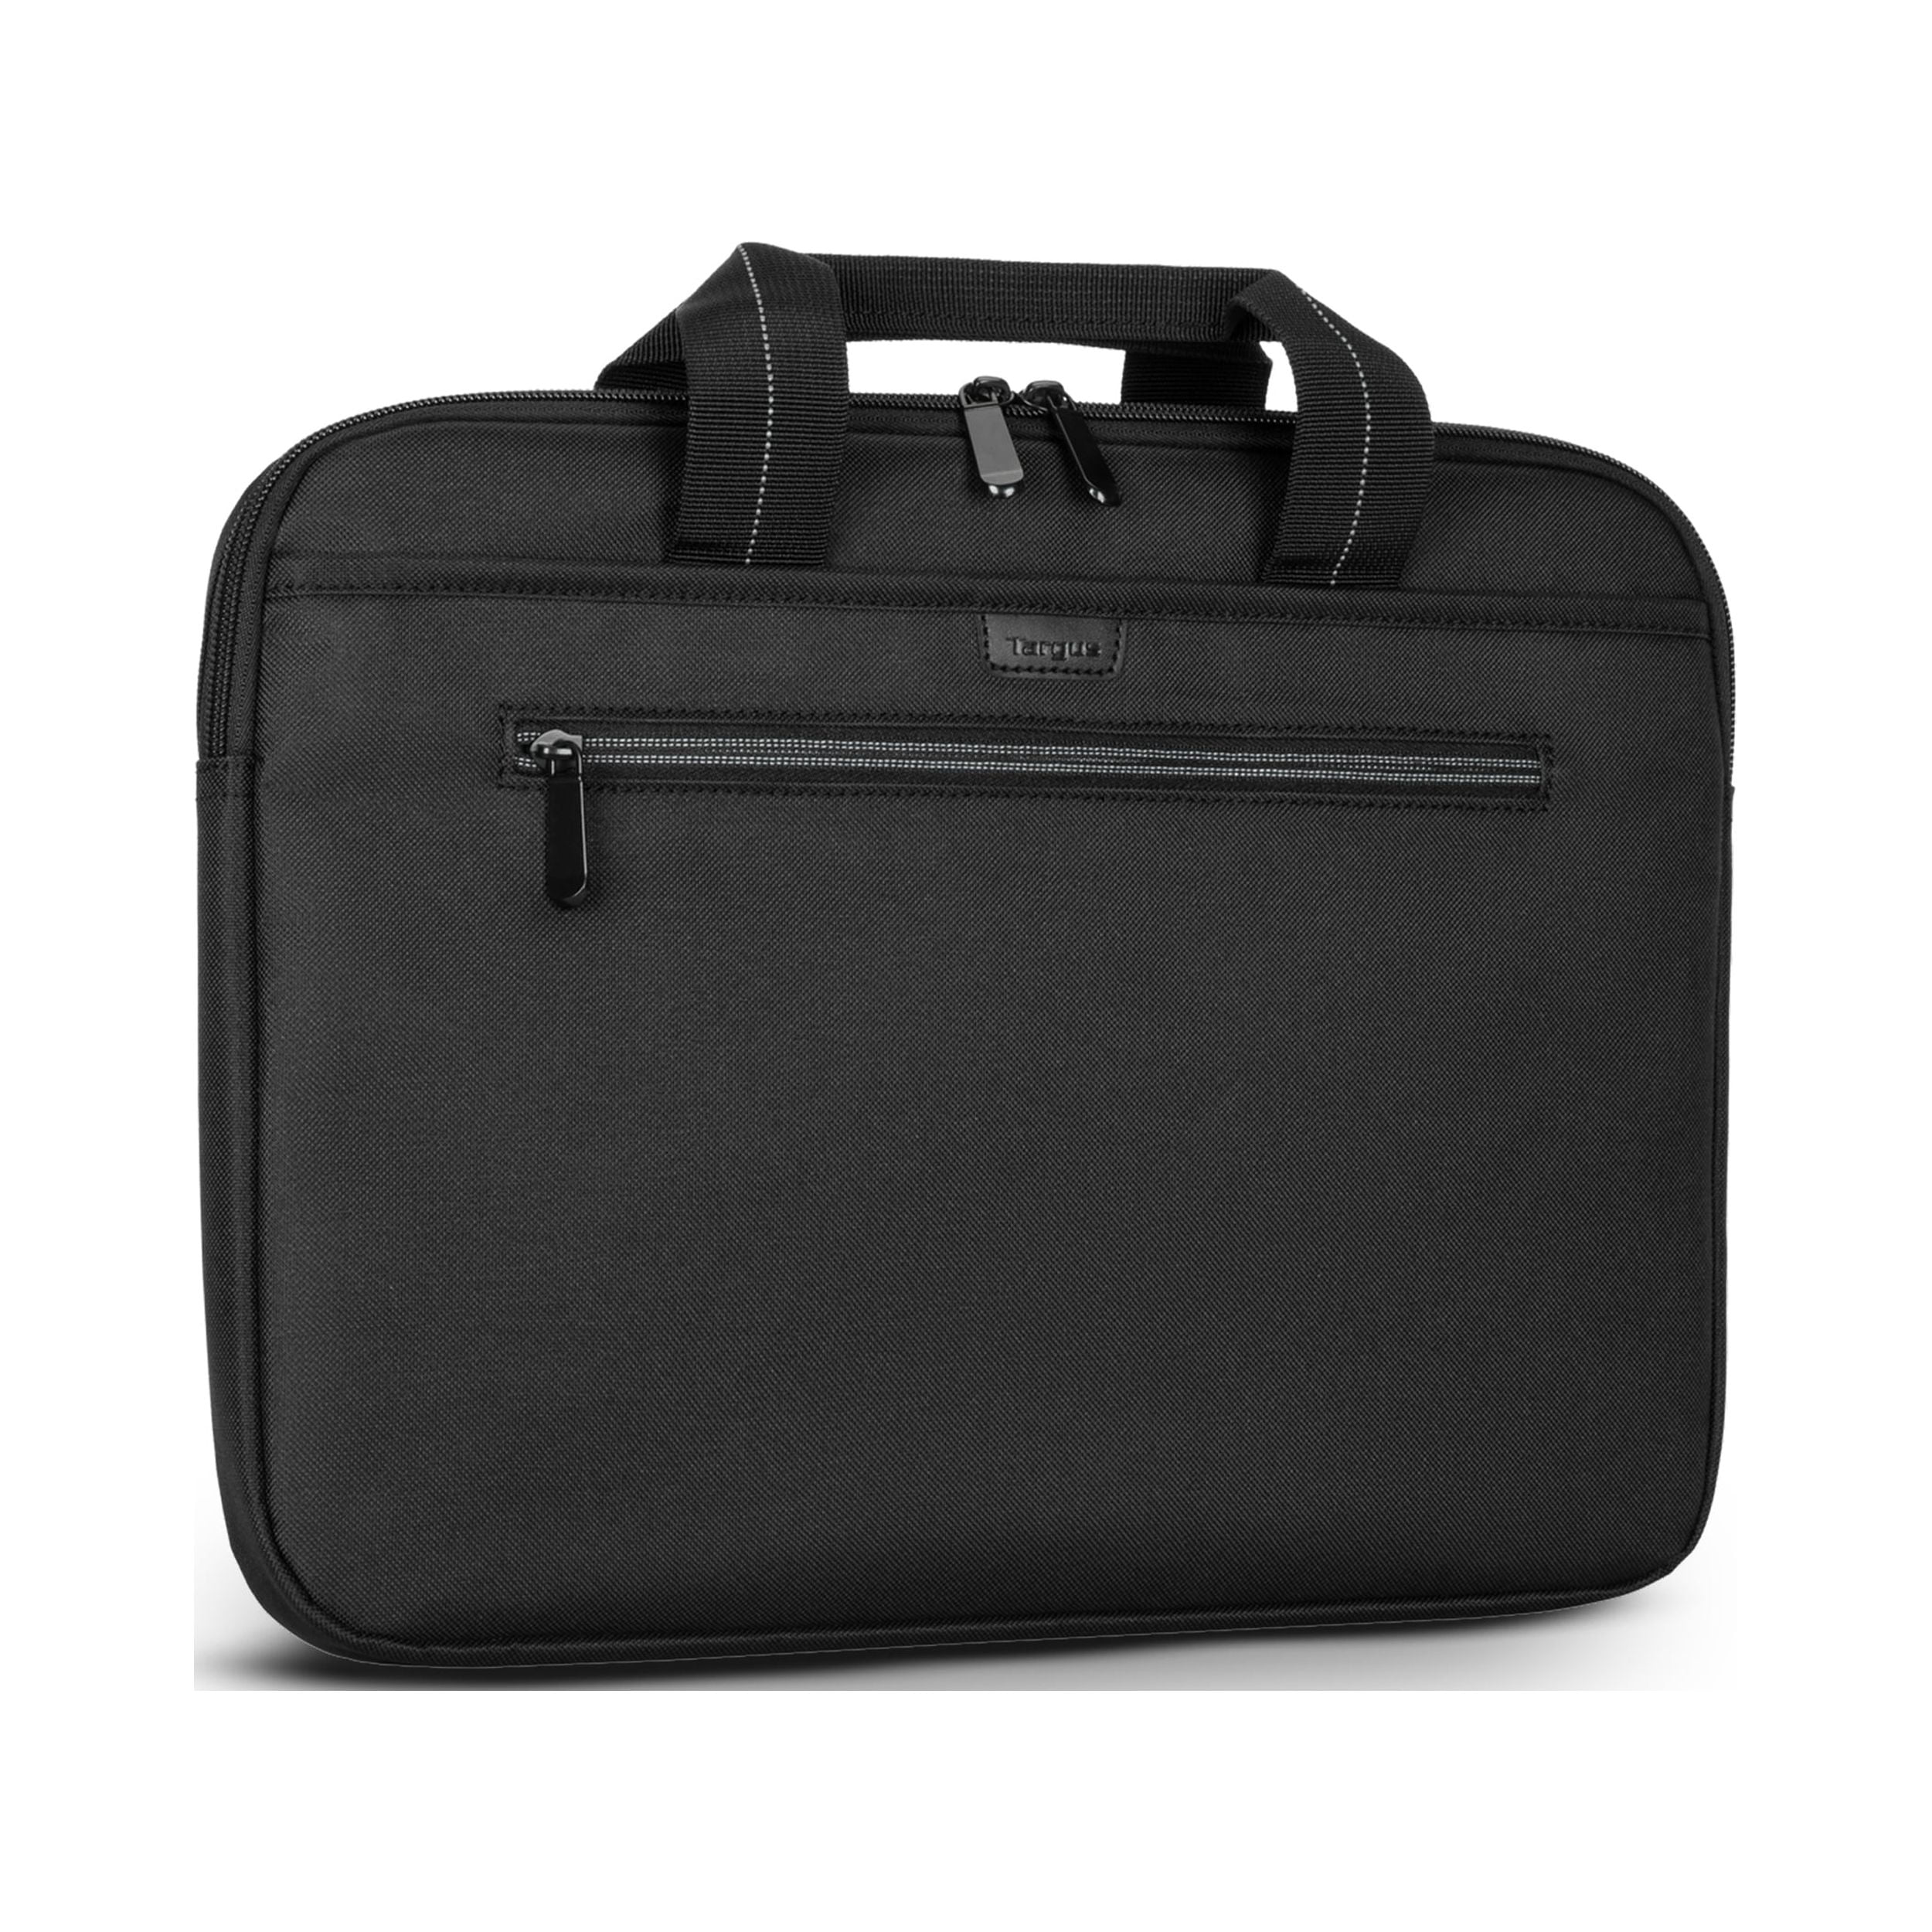 Balo Targus Targus Cypress EcoSmart 15.6 inch Slim Backpack TBB58401GL-70  chống nước, chống sốc, thân thiện môi trường